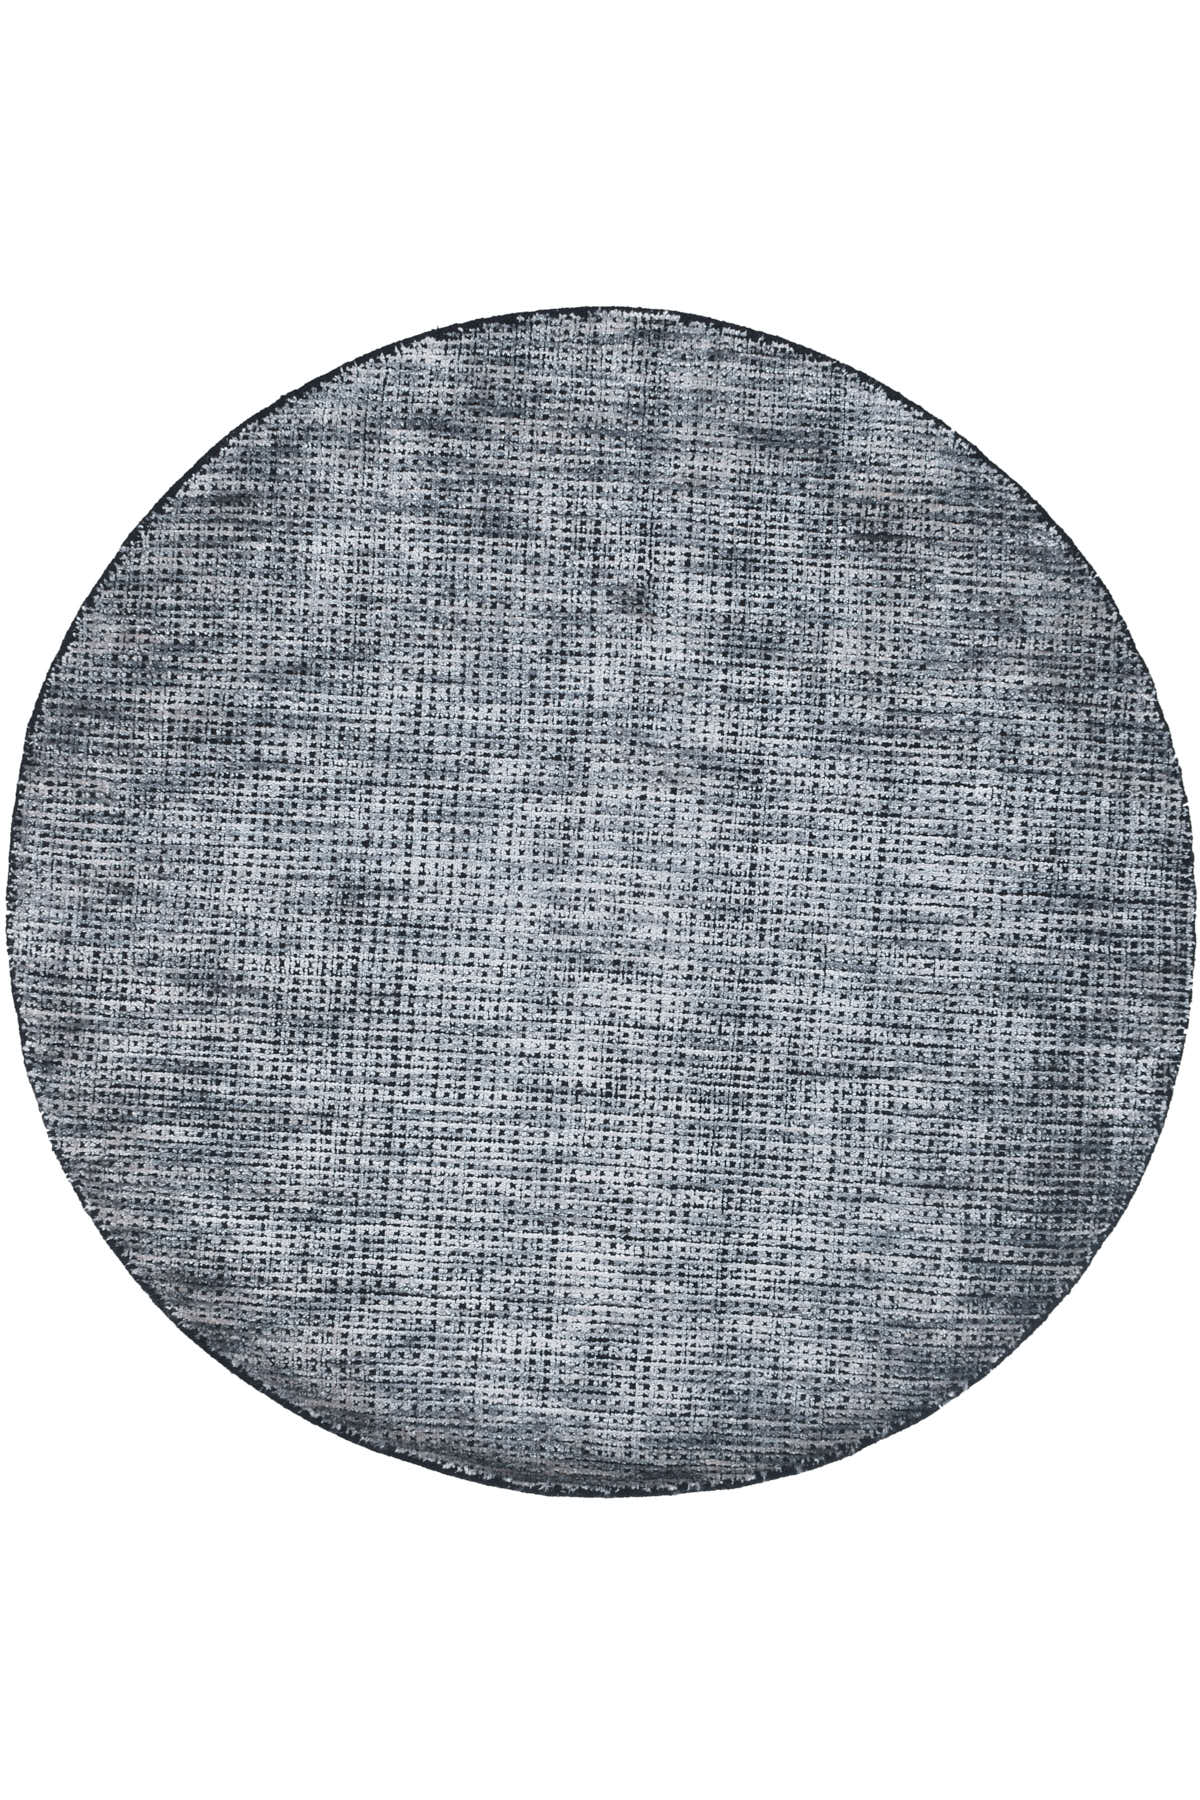 שטיח ואן grey עגול